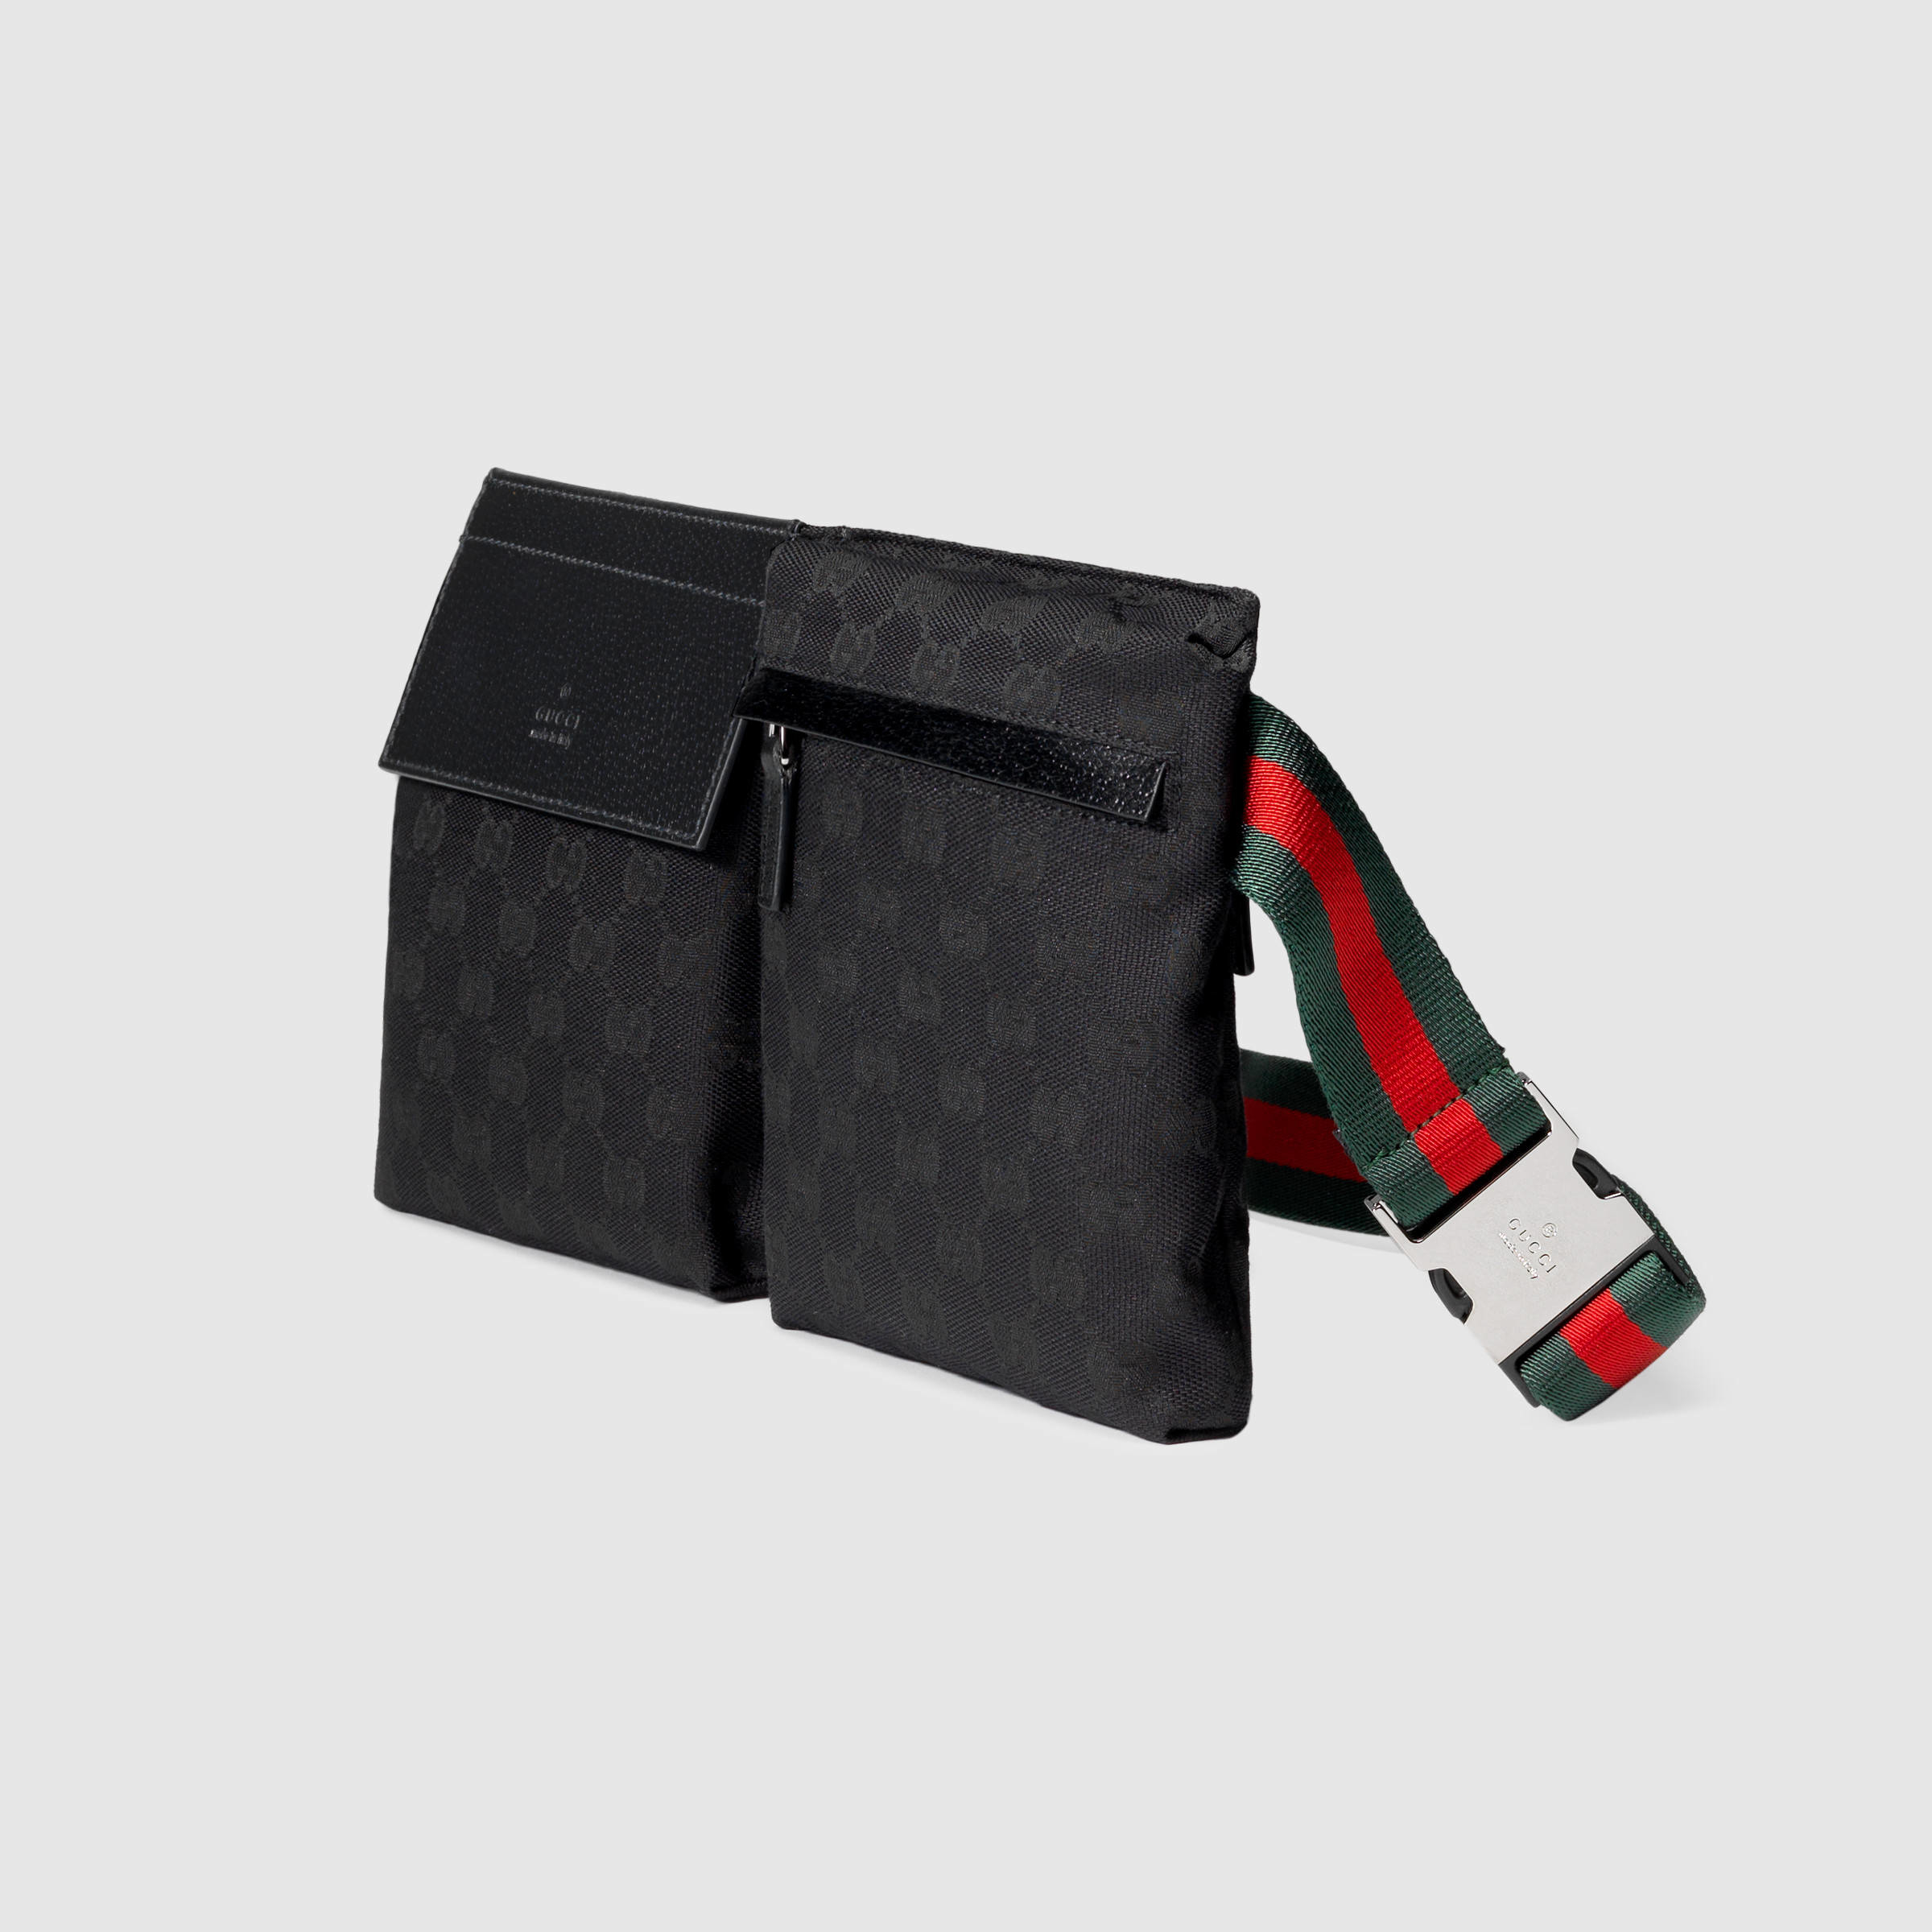 Gucci GG Belt Bag for Men